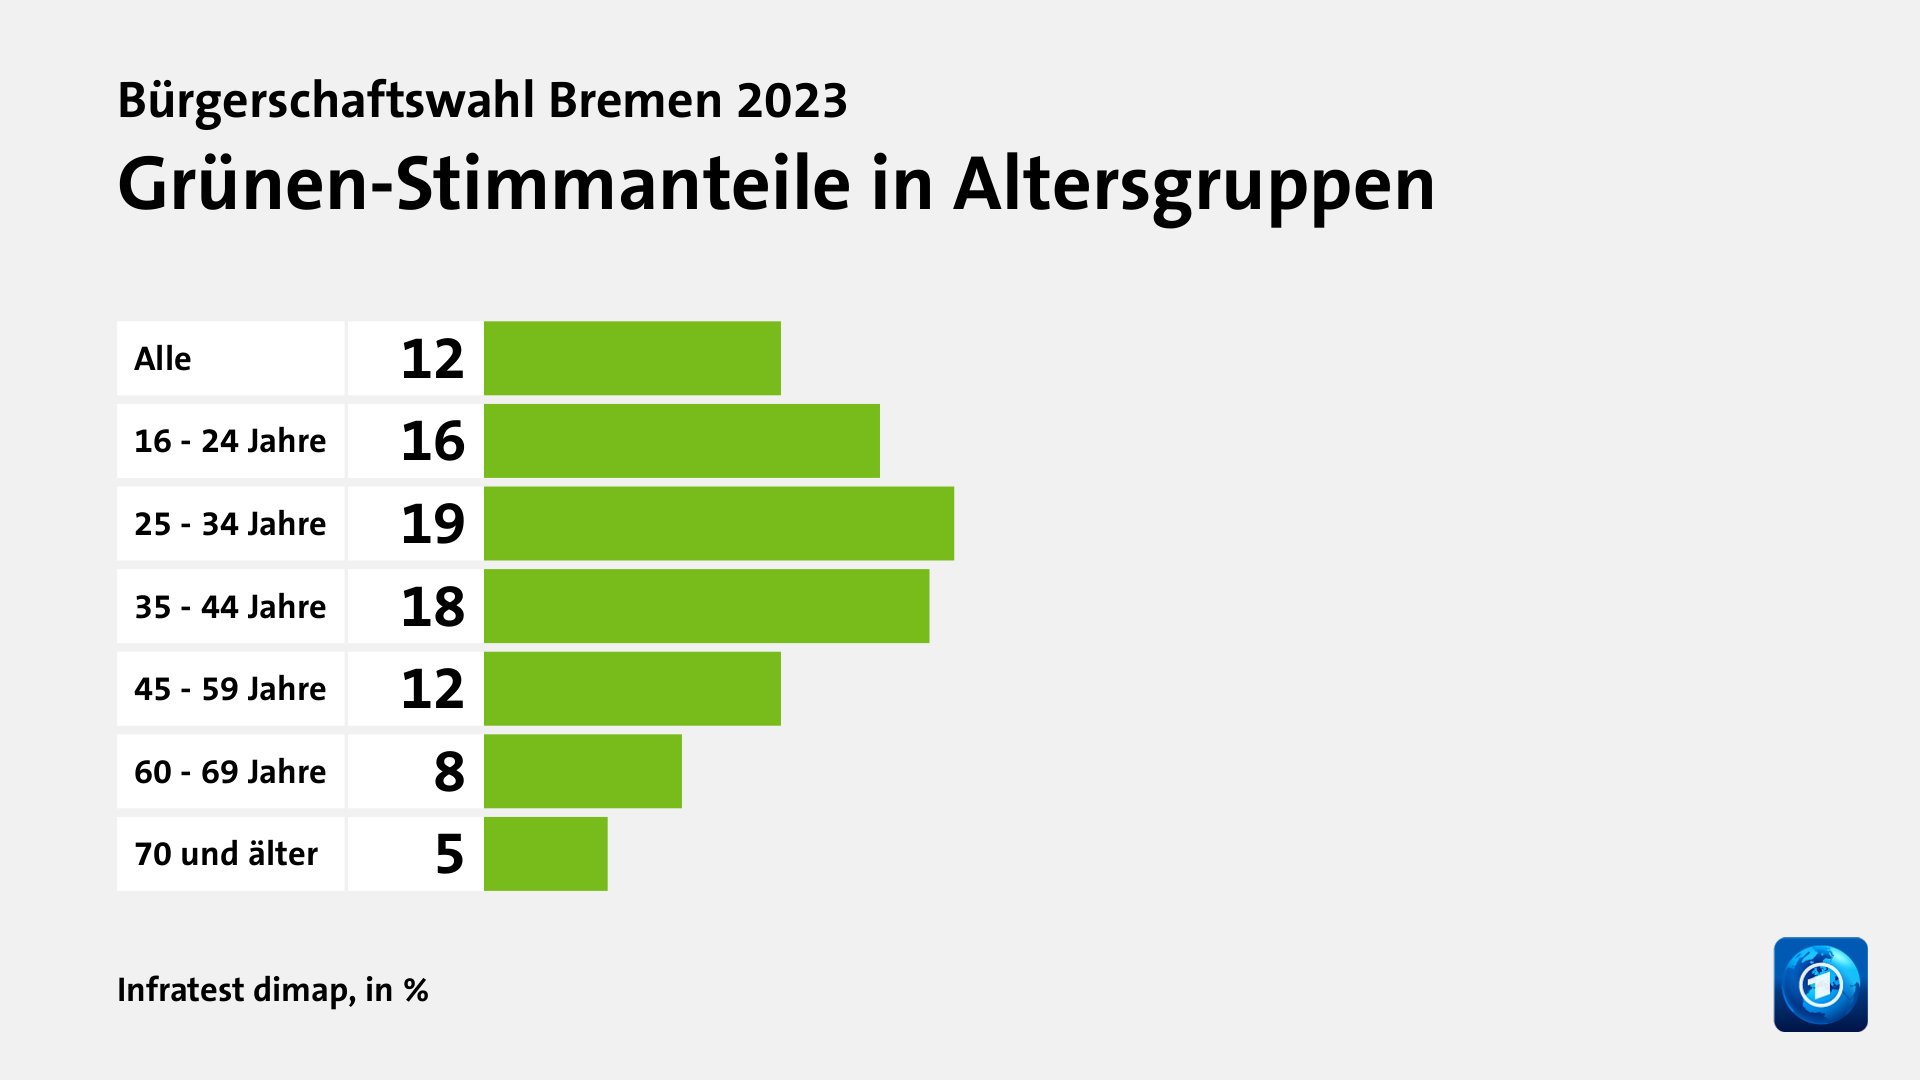 Grünen-Stimmanteile in Altersgruppen, in %: Alle 12, 16 - 24 Jahre 16, 25 - 34 Jahre 19, 35 - 44 Jahre 18, 45 - 59 Jahre 12, 60 - 69 Jahre 8, 70 und älter 5, Quelle: Infratest dimap